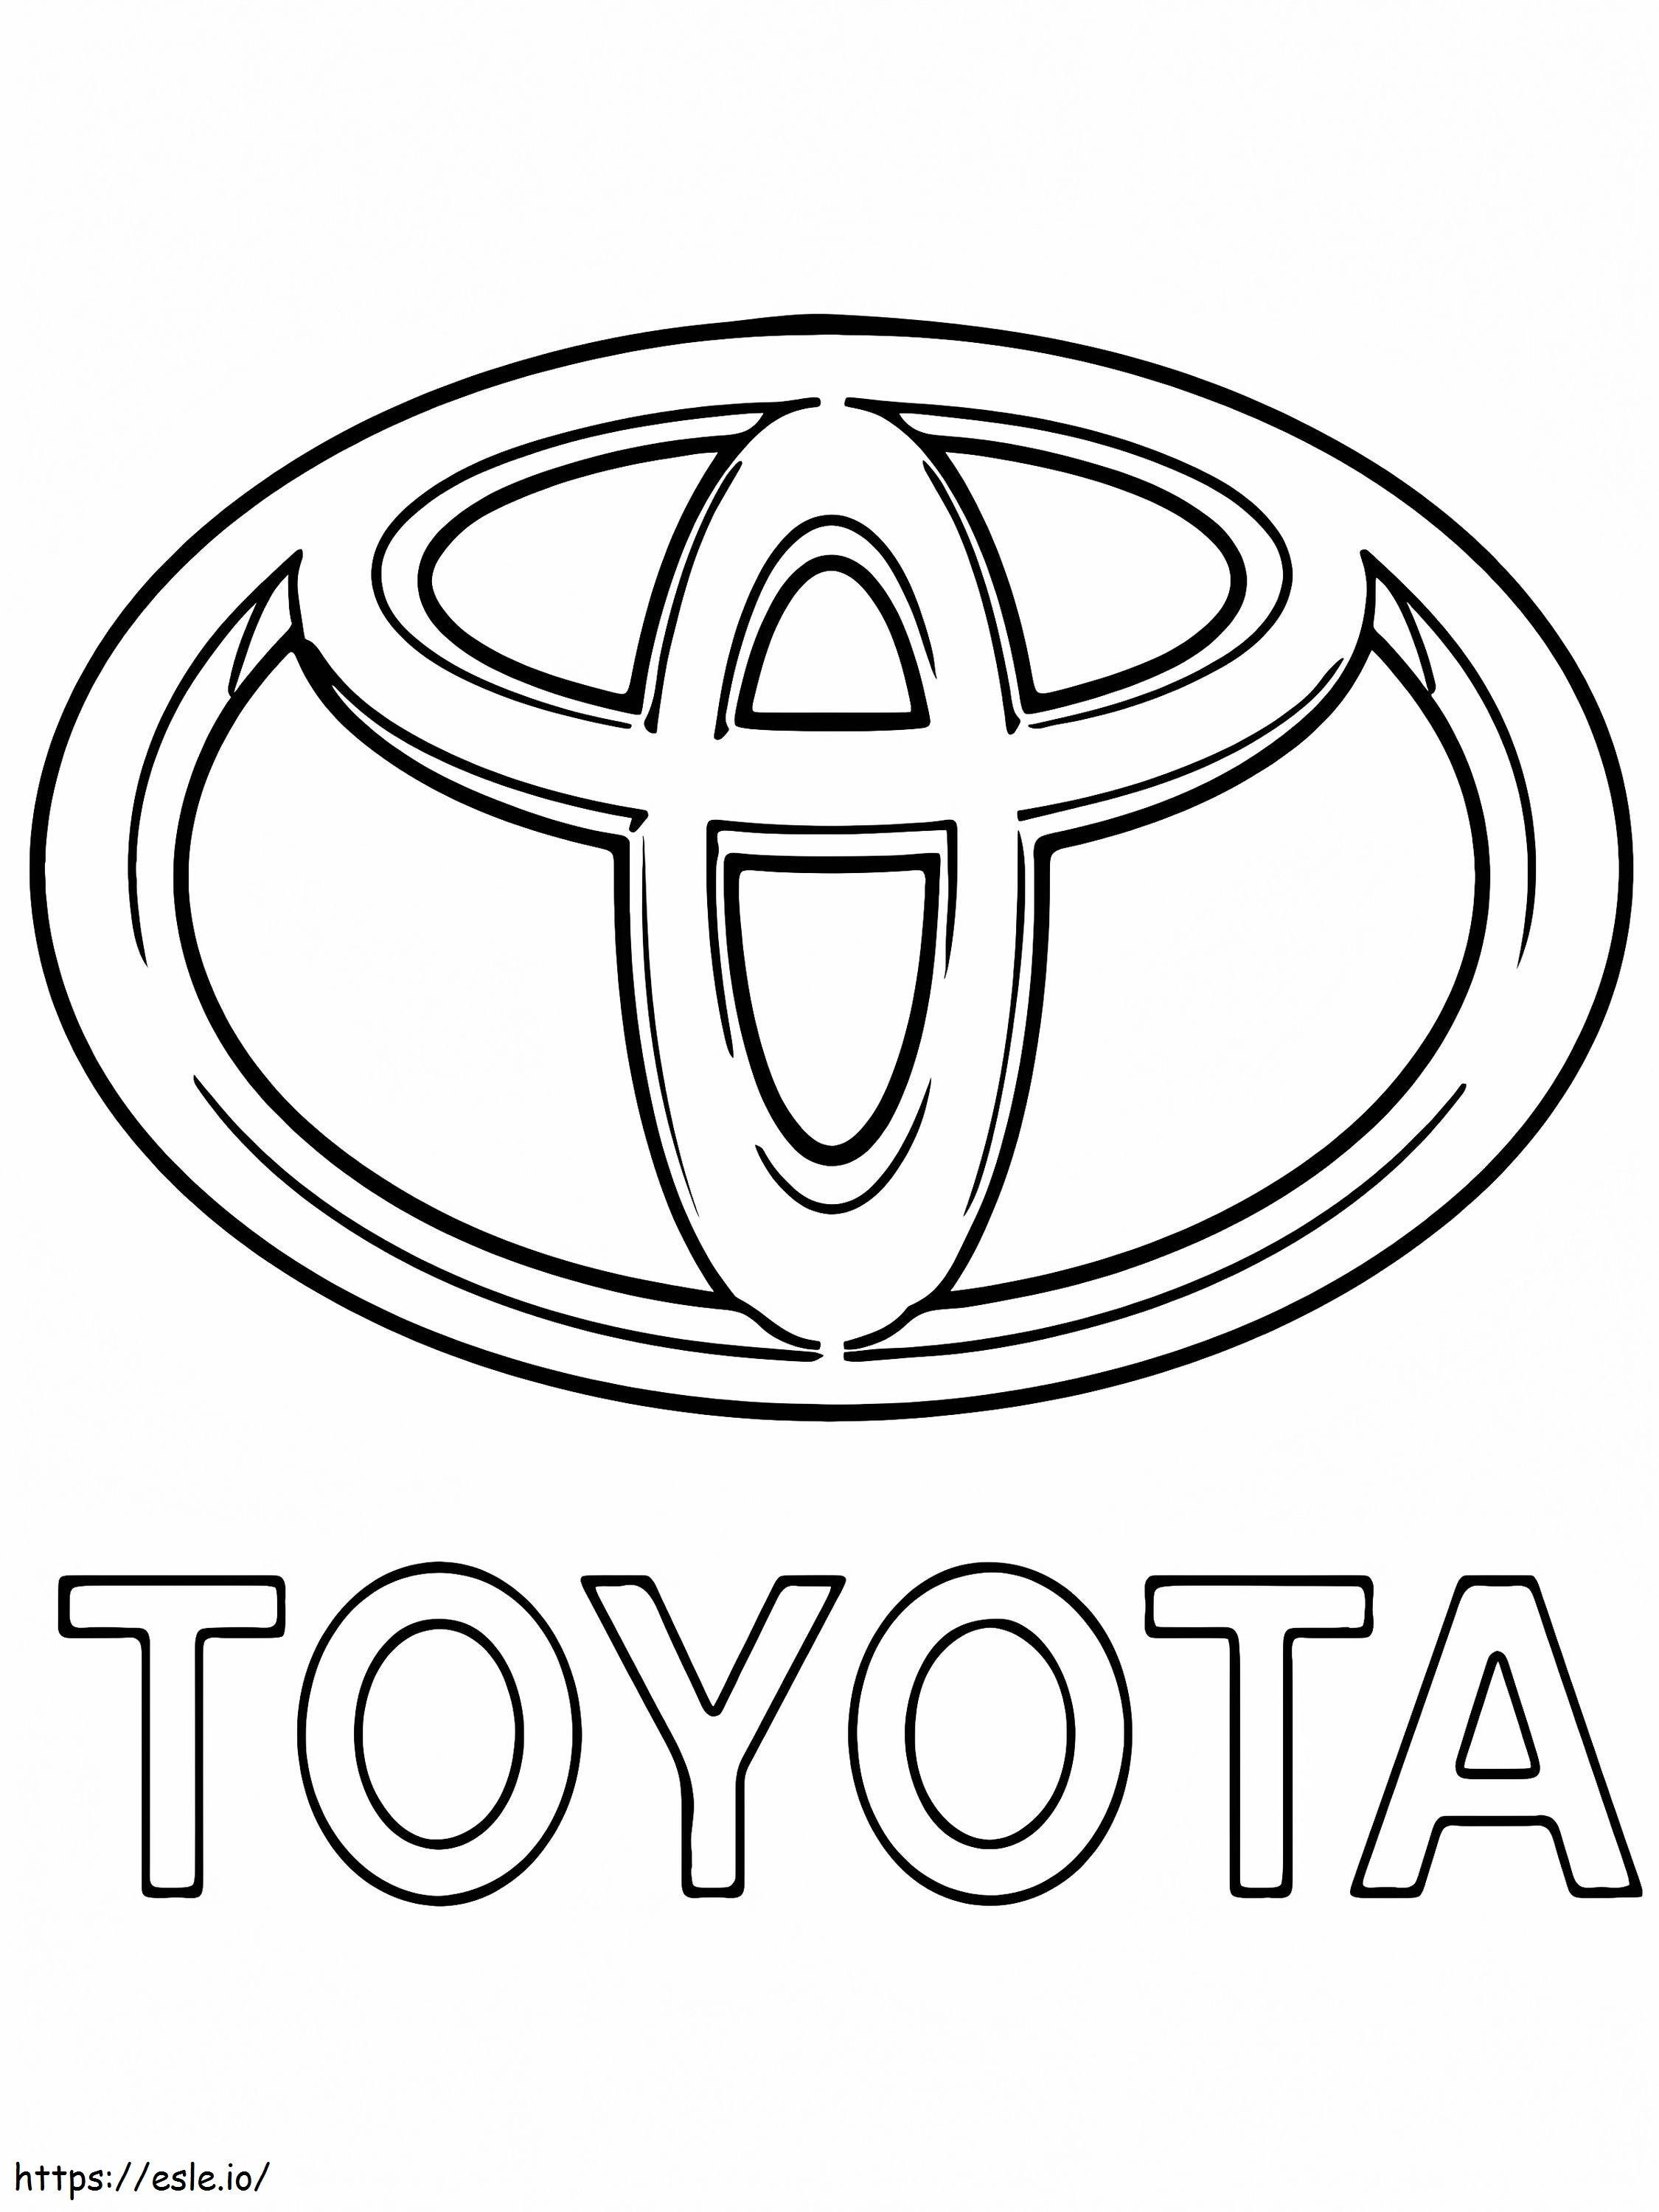 Logo dell'auto Toyota da colorare